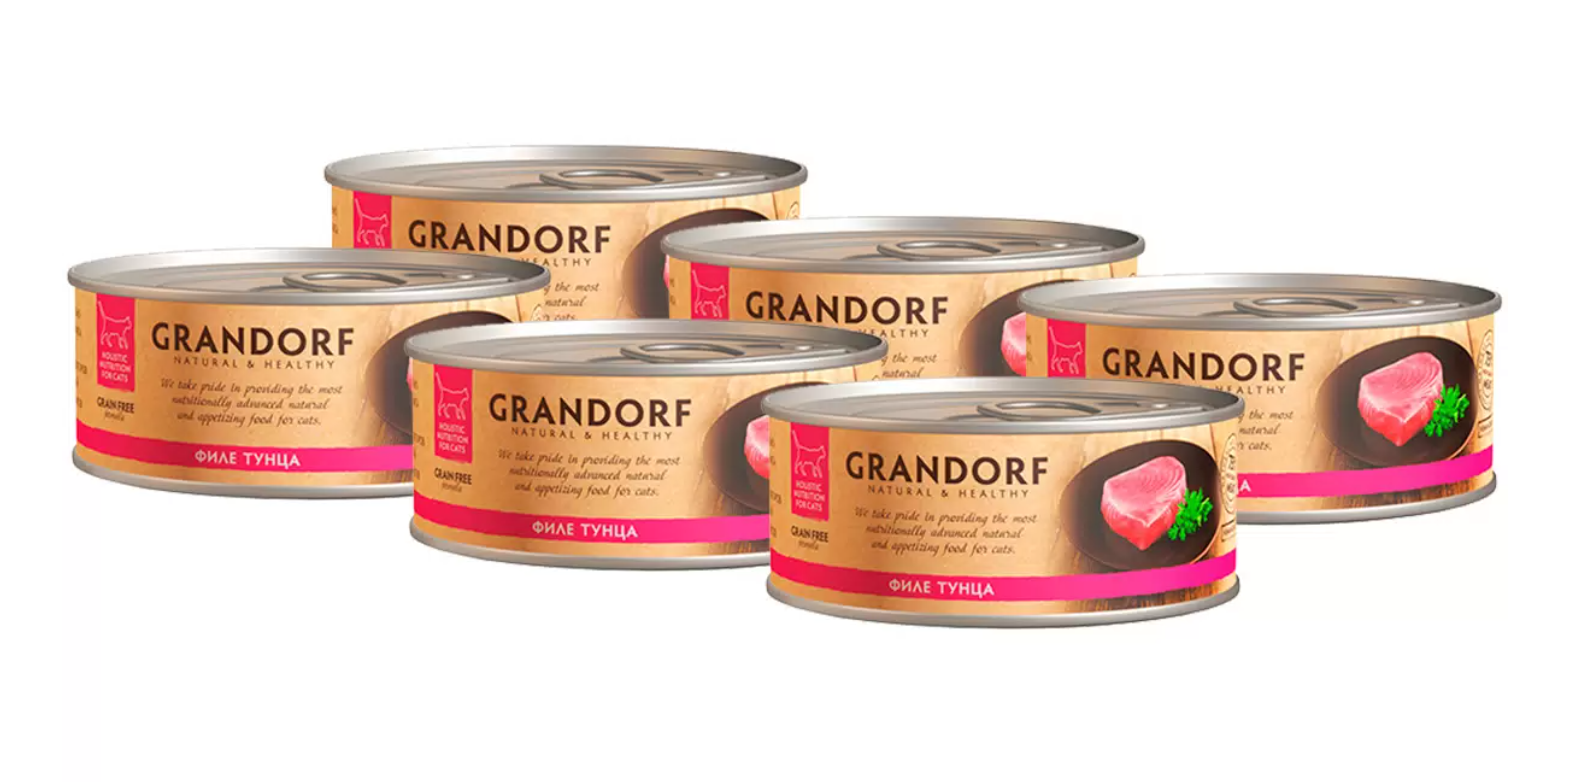 Grandorf Adult Grain Free Влажный беззерновой корм для кошек филе Тунца 6шт*70г